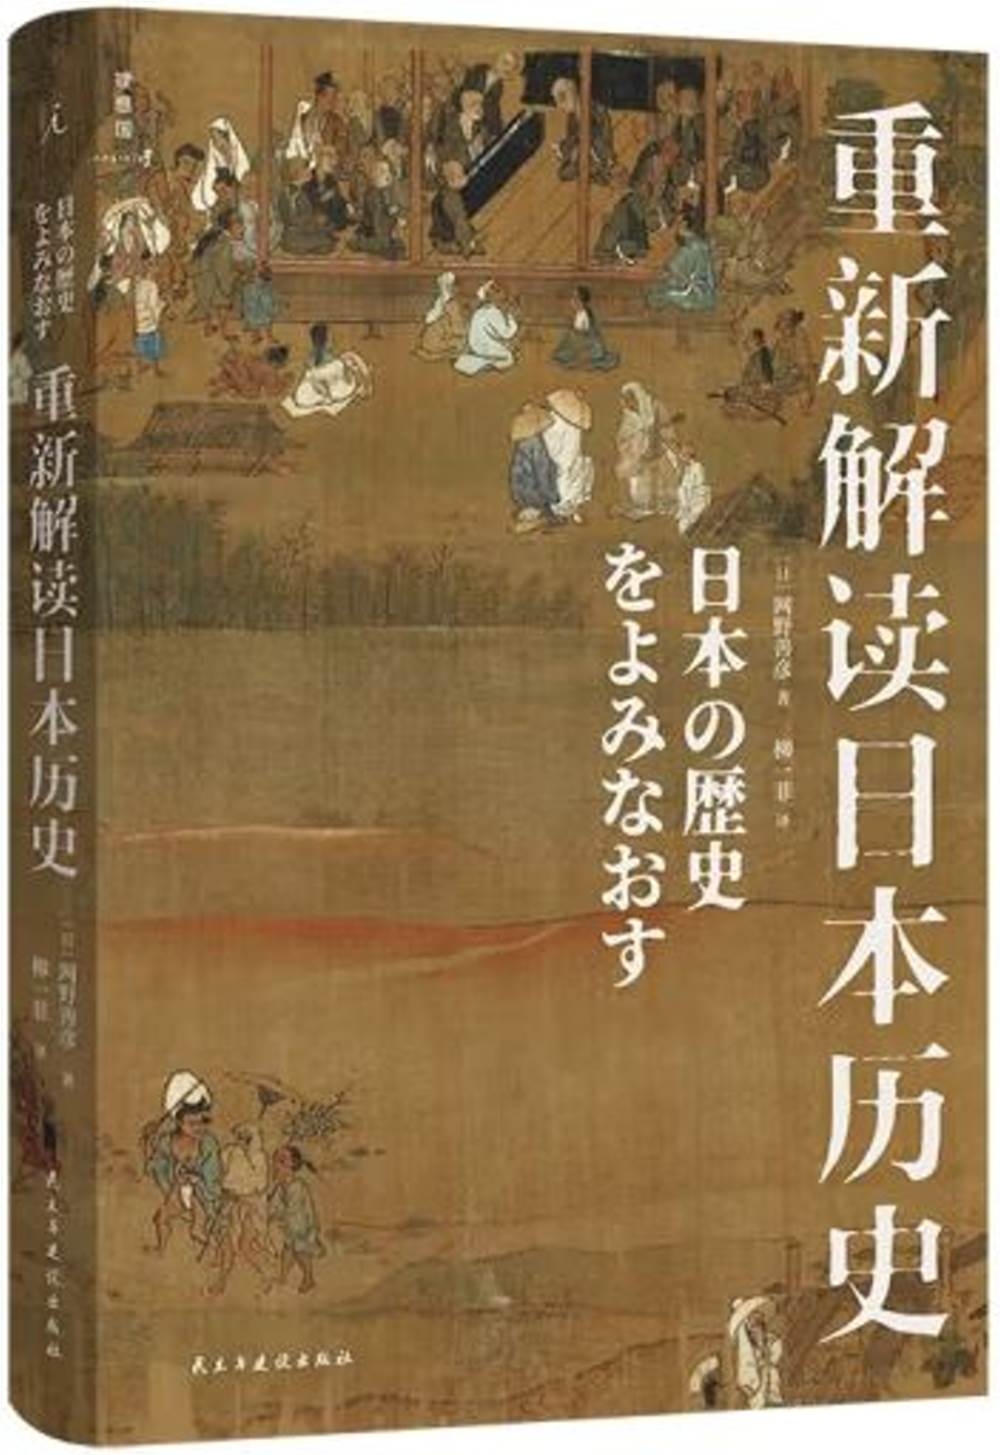 重新解讀日本歷史